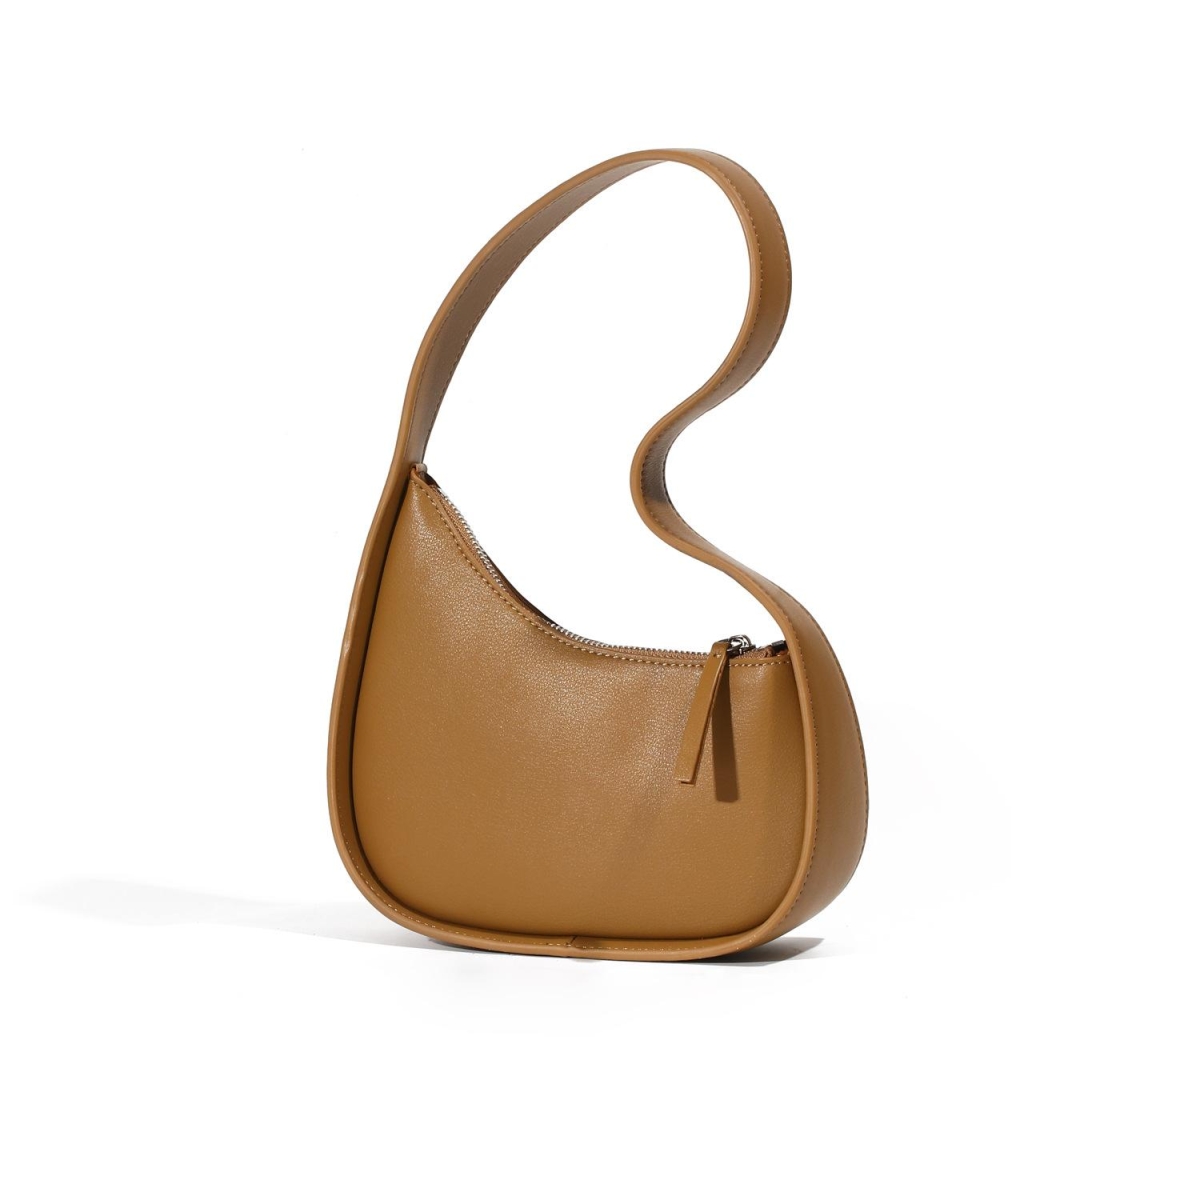 Women's handbags, shoulder bags